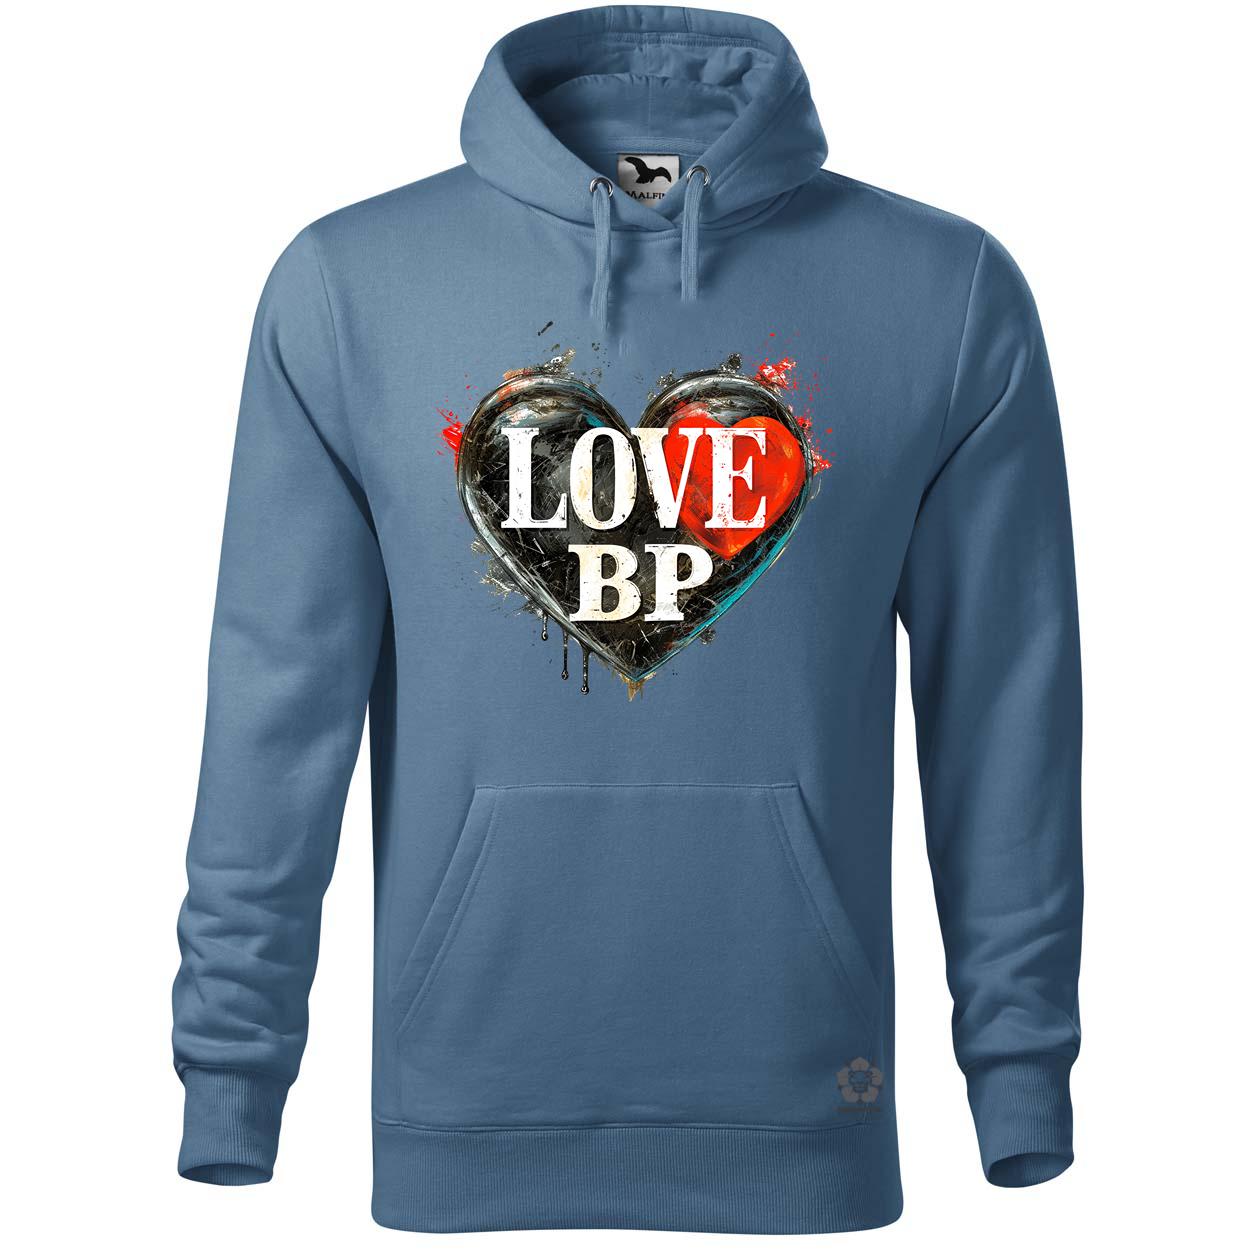 Love BP v1